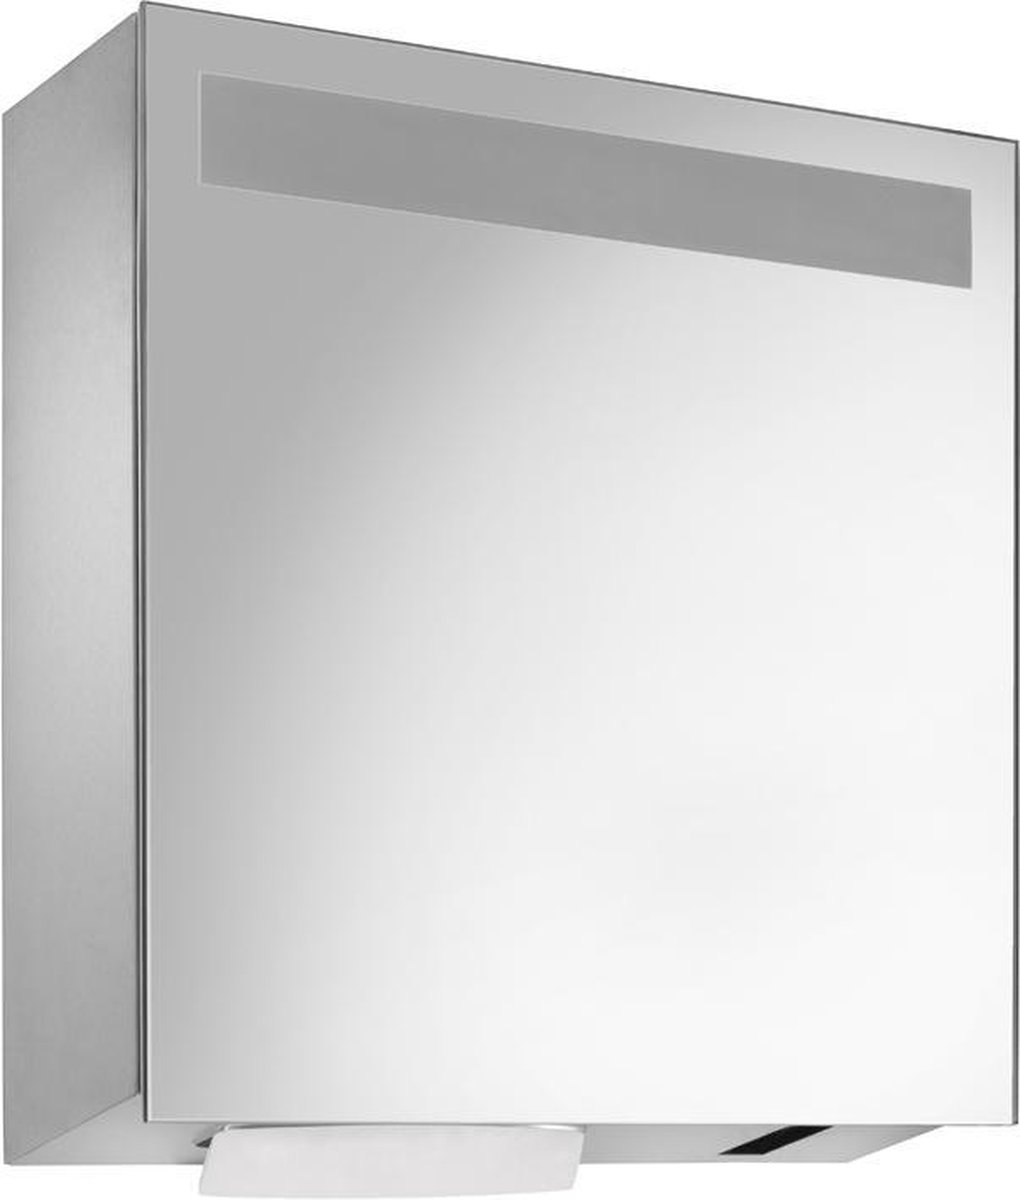 RVS spiegelkast WP650e met sensor zeep- en handdoekdispenser van Wagner EWAR